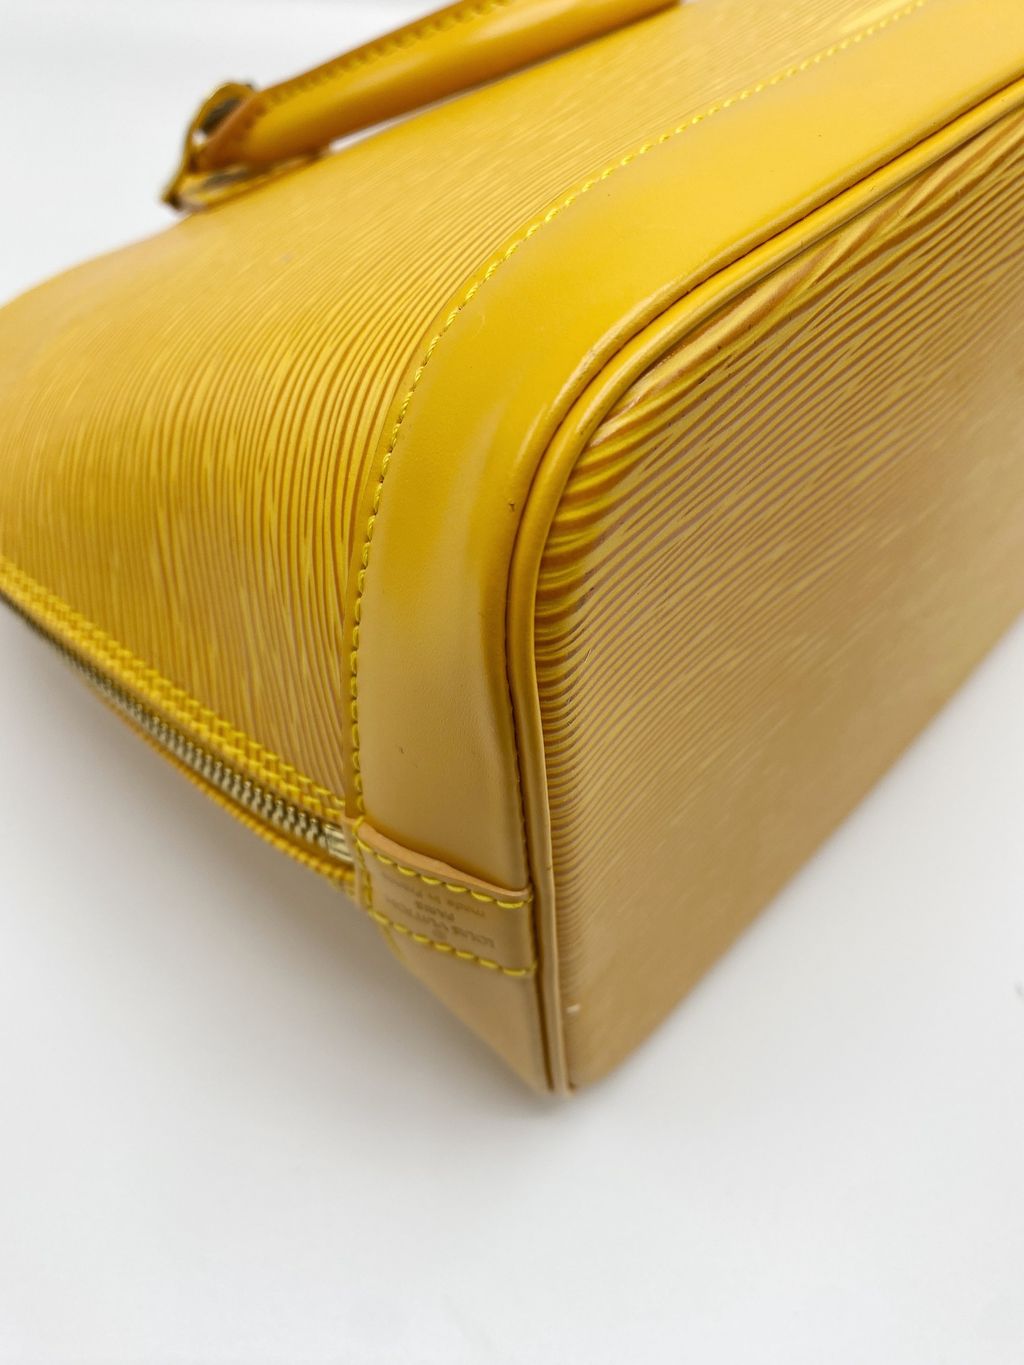 Louis Vuitton Epi Leather Quartz Color Alma PM Bag – Perry's Jewelry